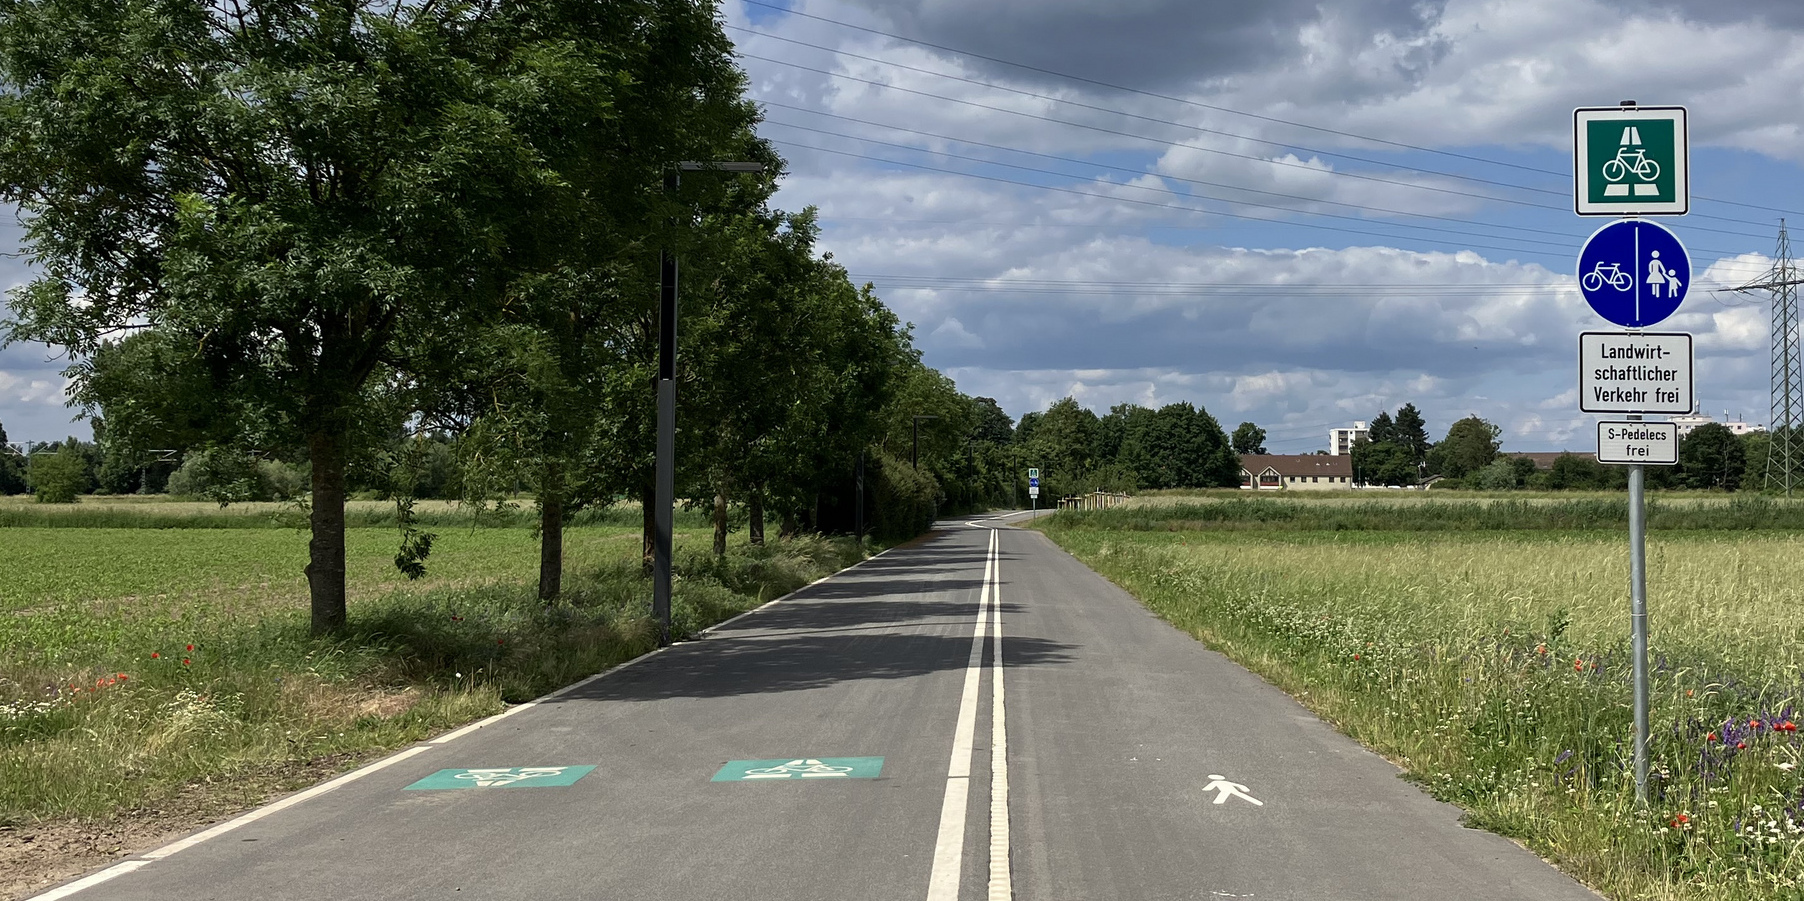 Bild von der Radschnellverbindung bei Darmstadt-Arheilgen mit getrenntem Gehweg und Radweg und der zugehörigen Beschilderung mit Zusatzschild "S-Pedelecs frei"